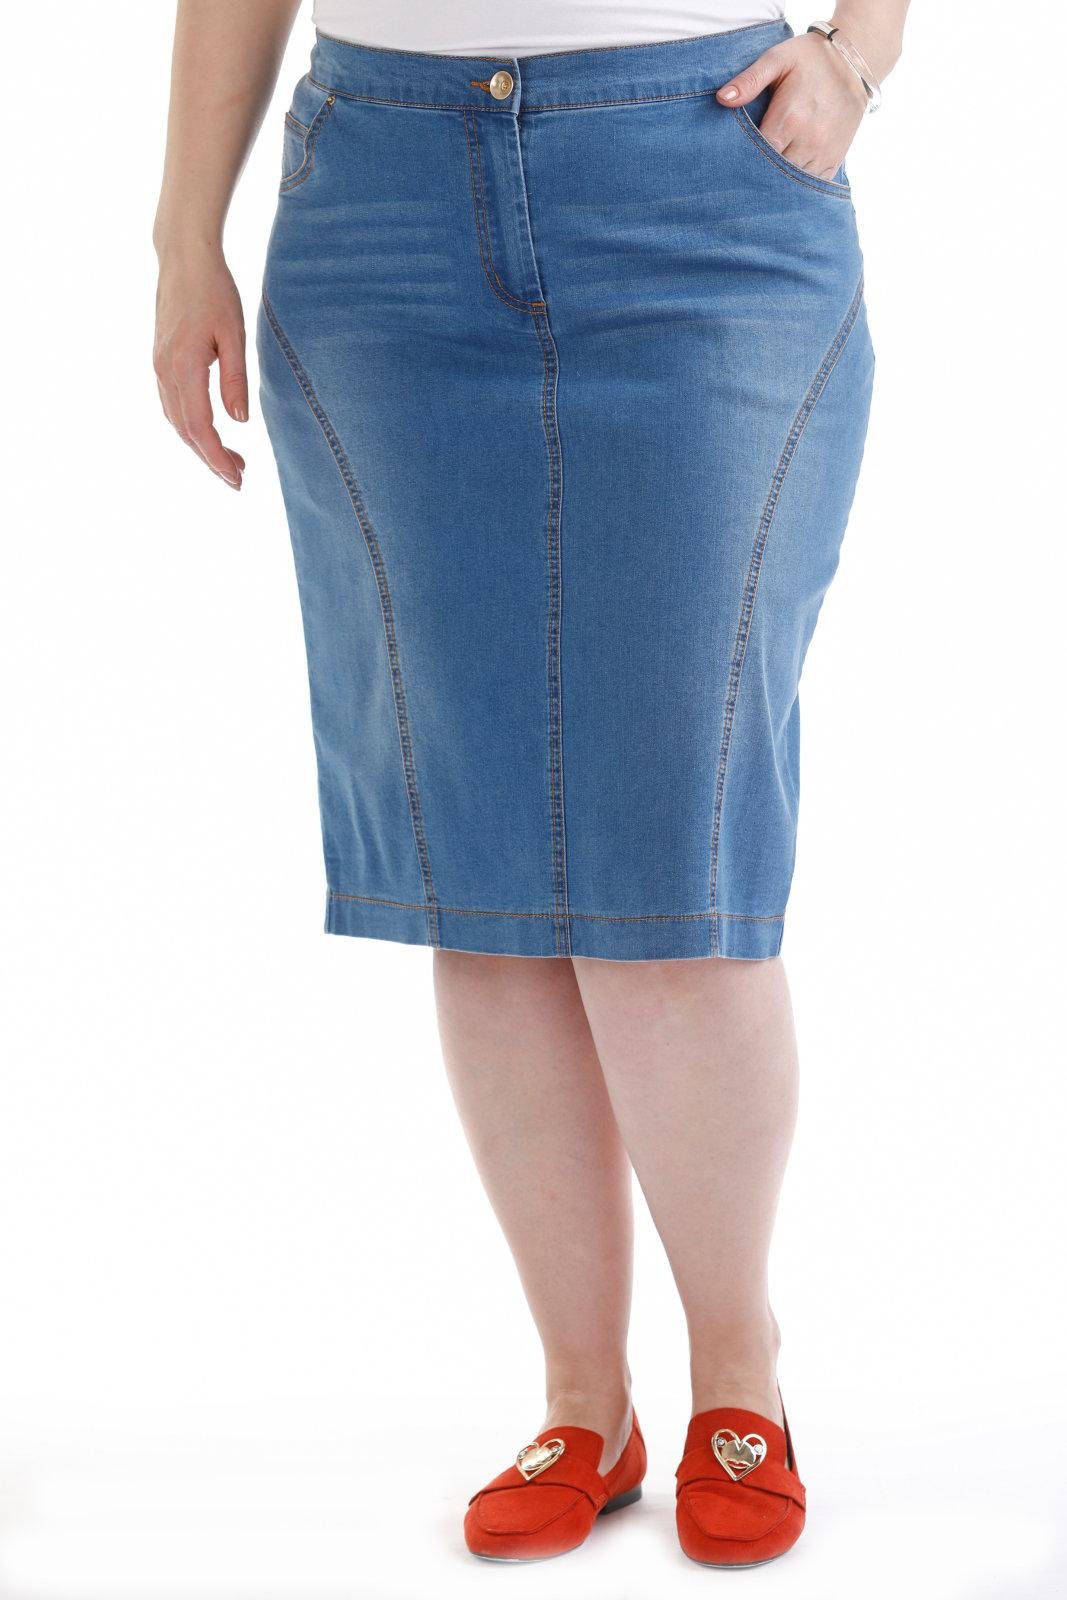 Вайлдберриз купить юбку большого размера. Юбка джинсовая Монтана Size 152. Вайлдберриз юбка джинсовая женская 50-52. Валберис юбка джинсовая 52 размер женская. Валберис джинсовые юбки женские.